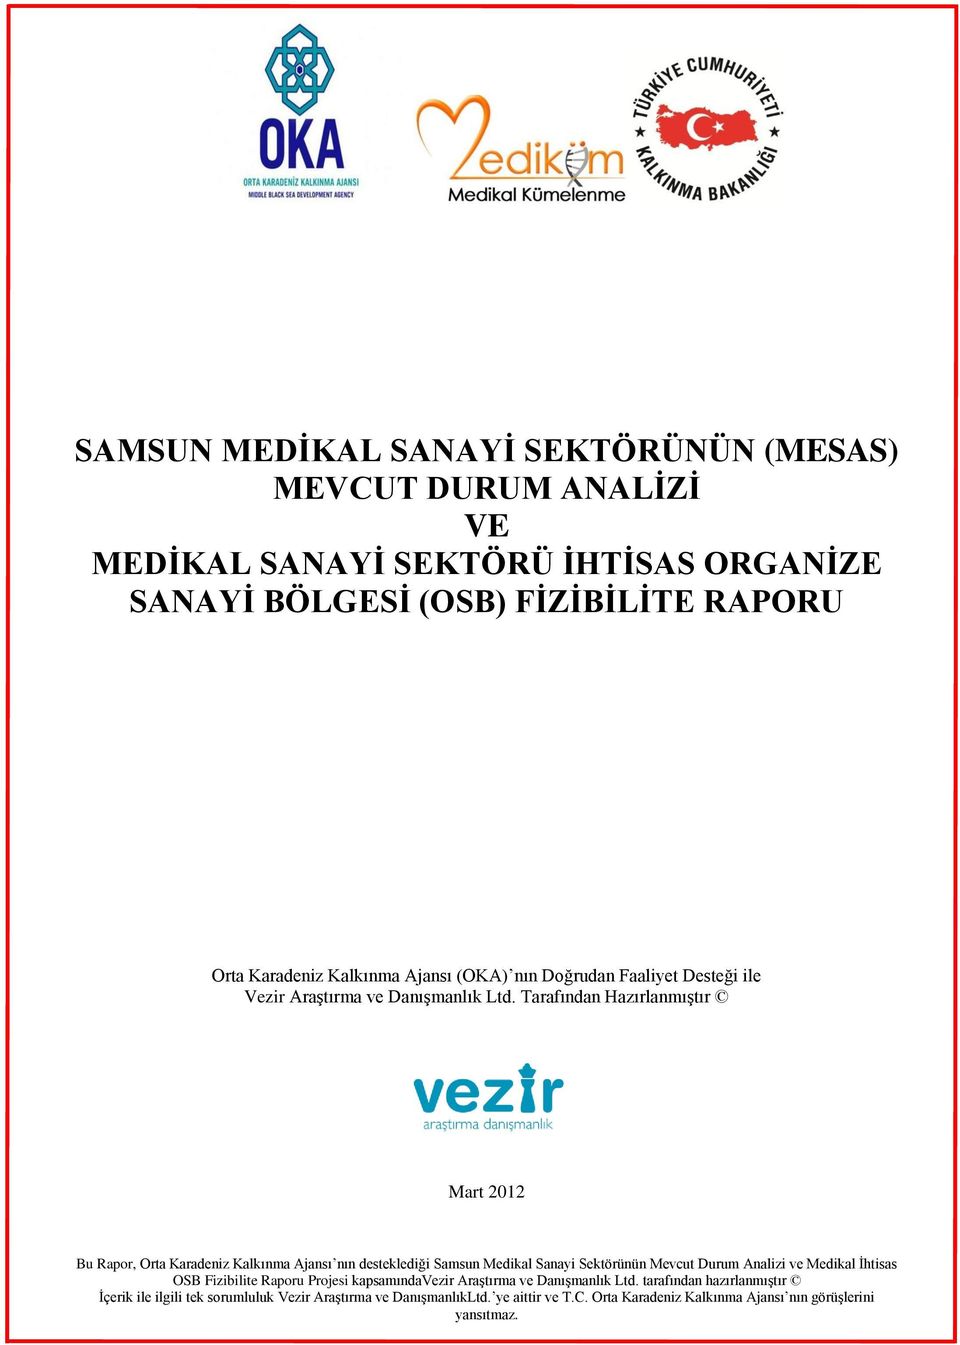 Tarafından Hazırlanmıştır Mart 2012 Bu Rapor, Orta Karadeniz Kalkınma Ajansı nın desteklediği Samsun Medikal Sanayi Sektörünün Mevcut Durum Analizi ve Medikal